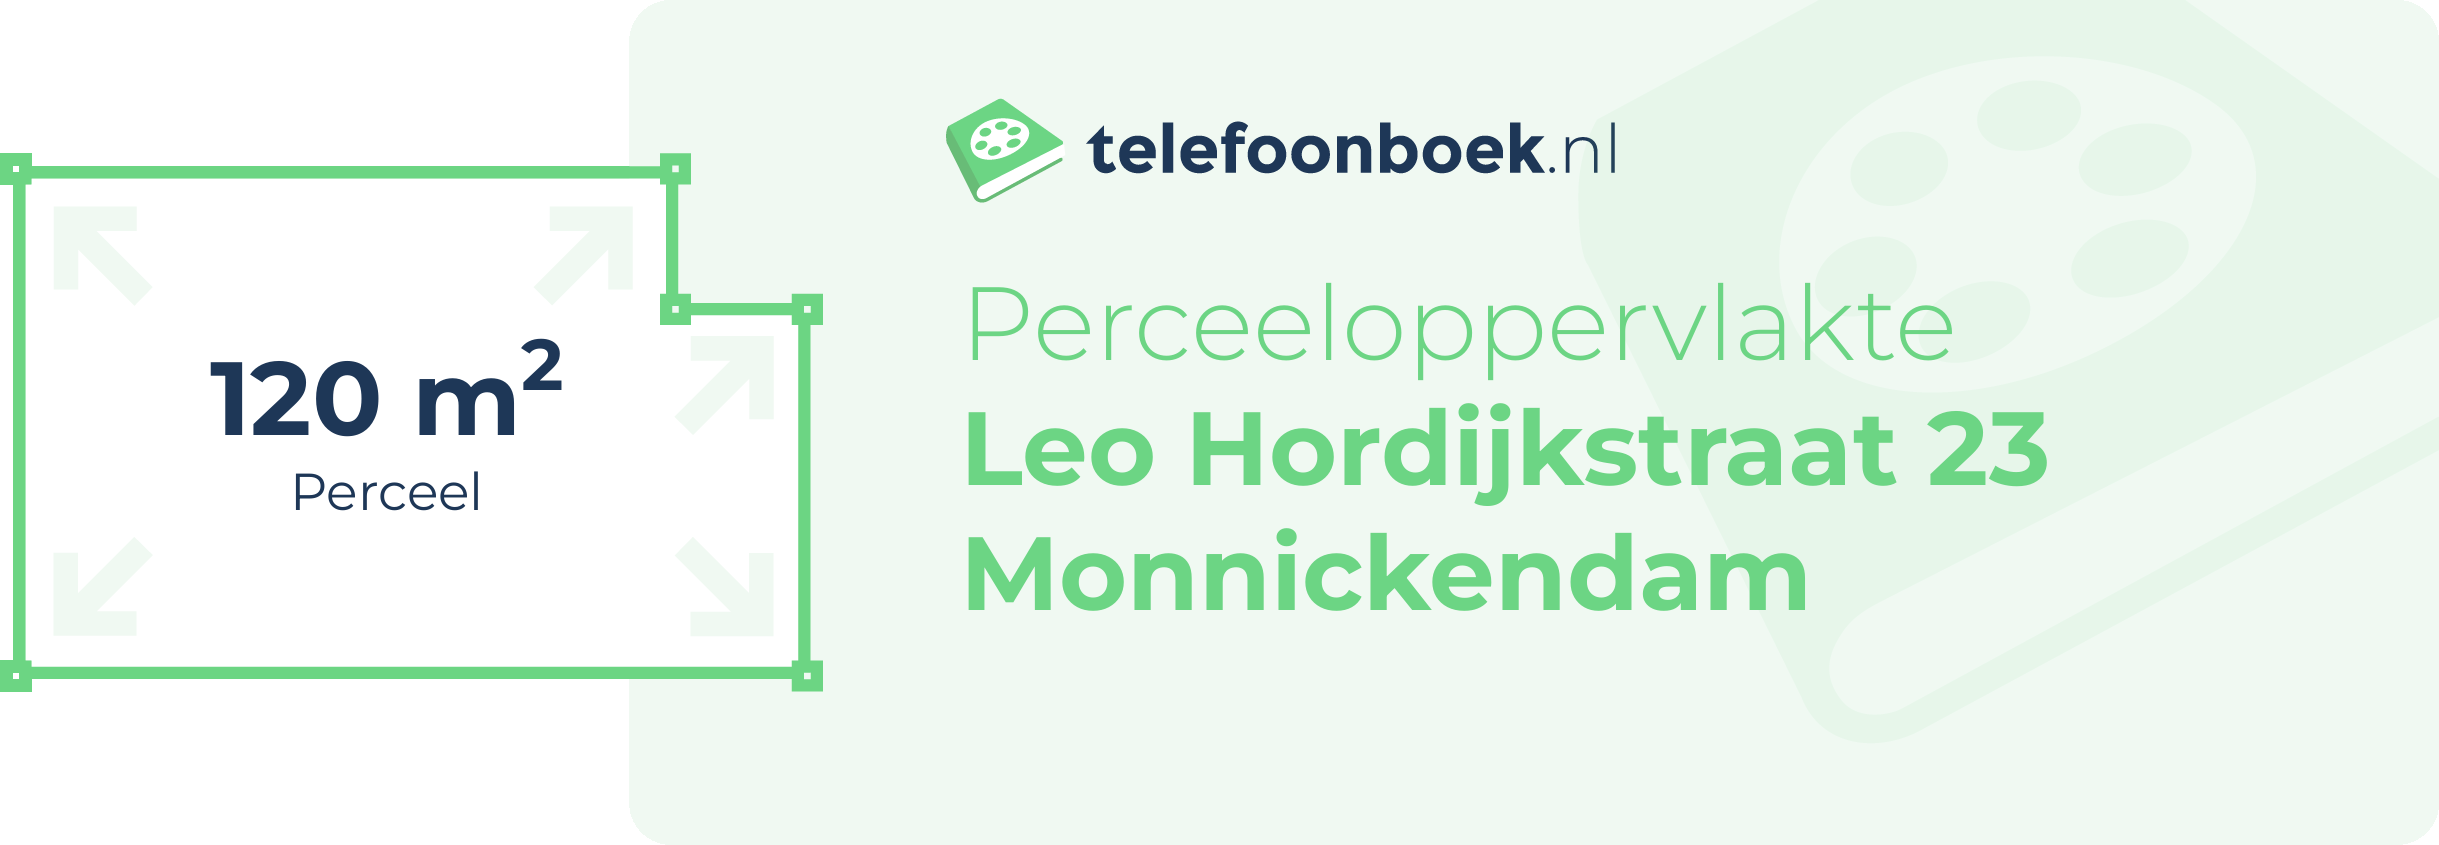 Perceeloppervlakte Leo Hordijkstraat 23 Monnickendam